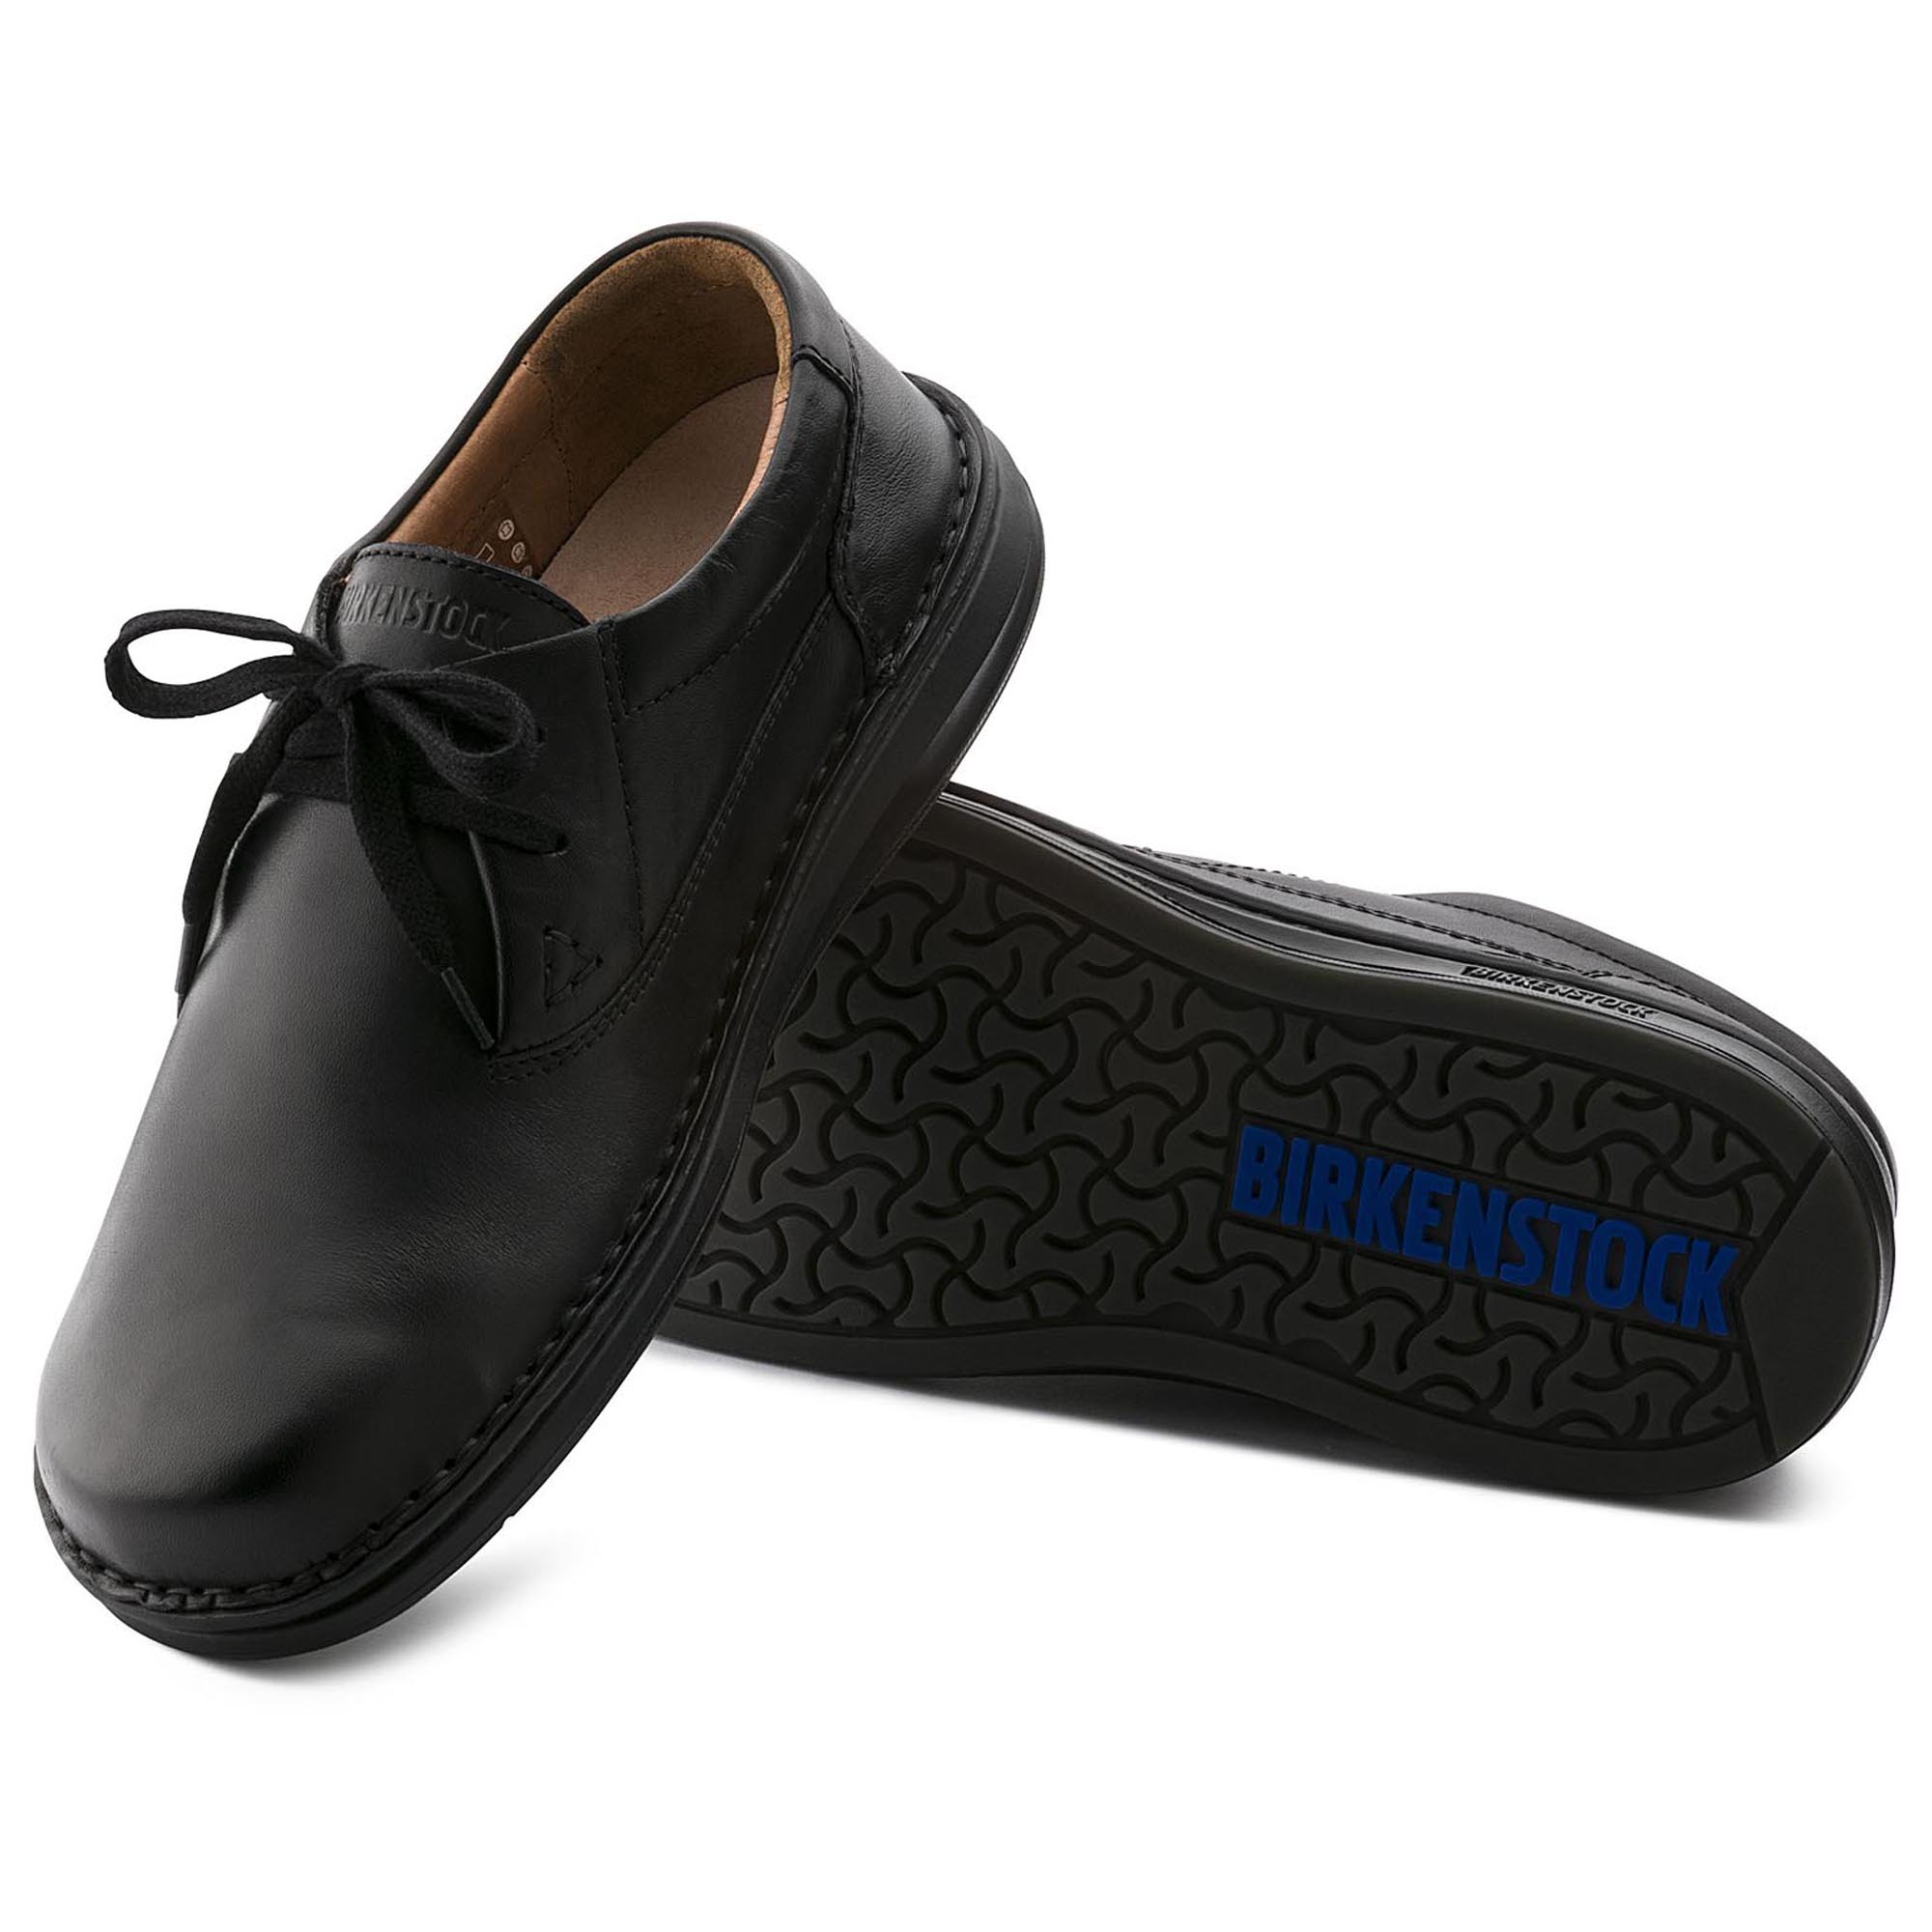 birkenstock memphis shoes